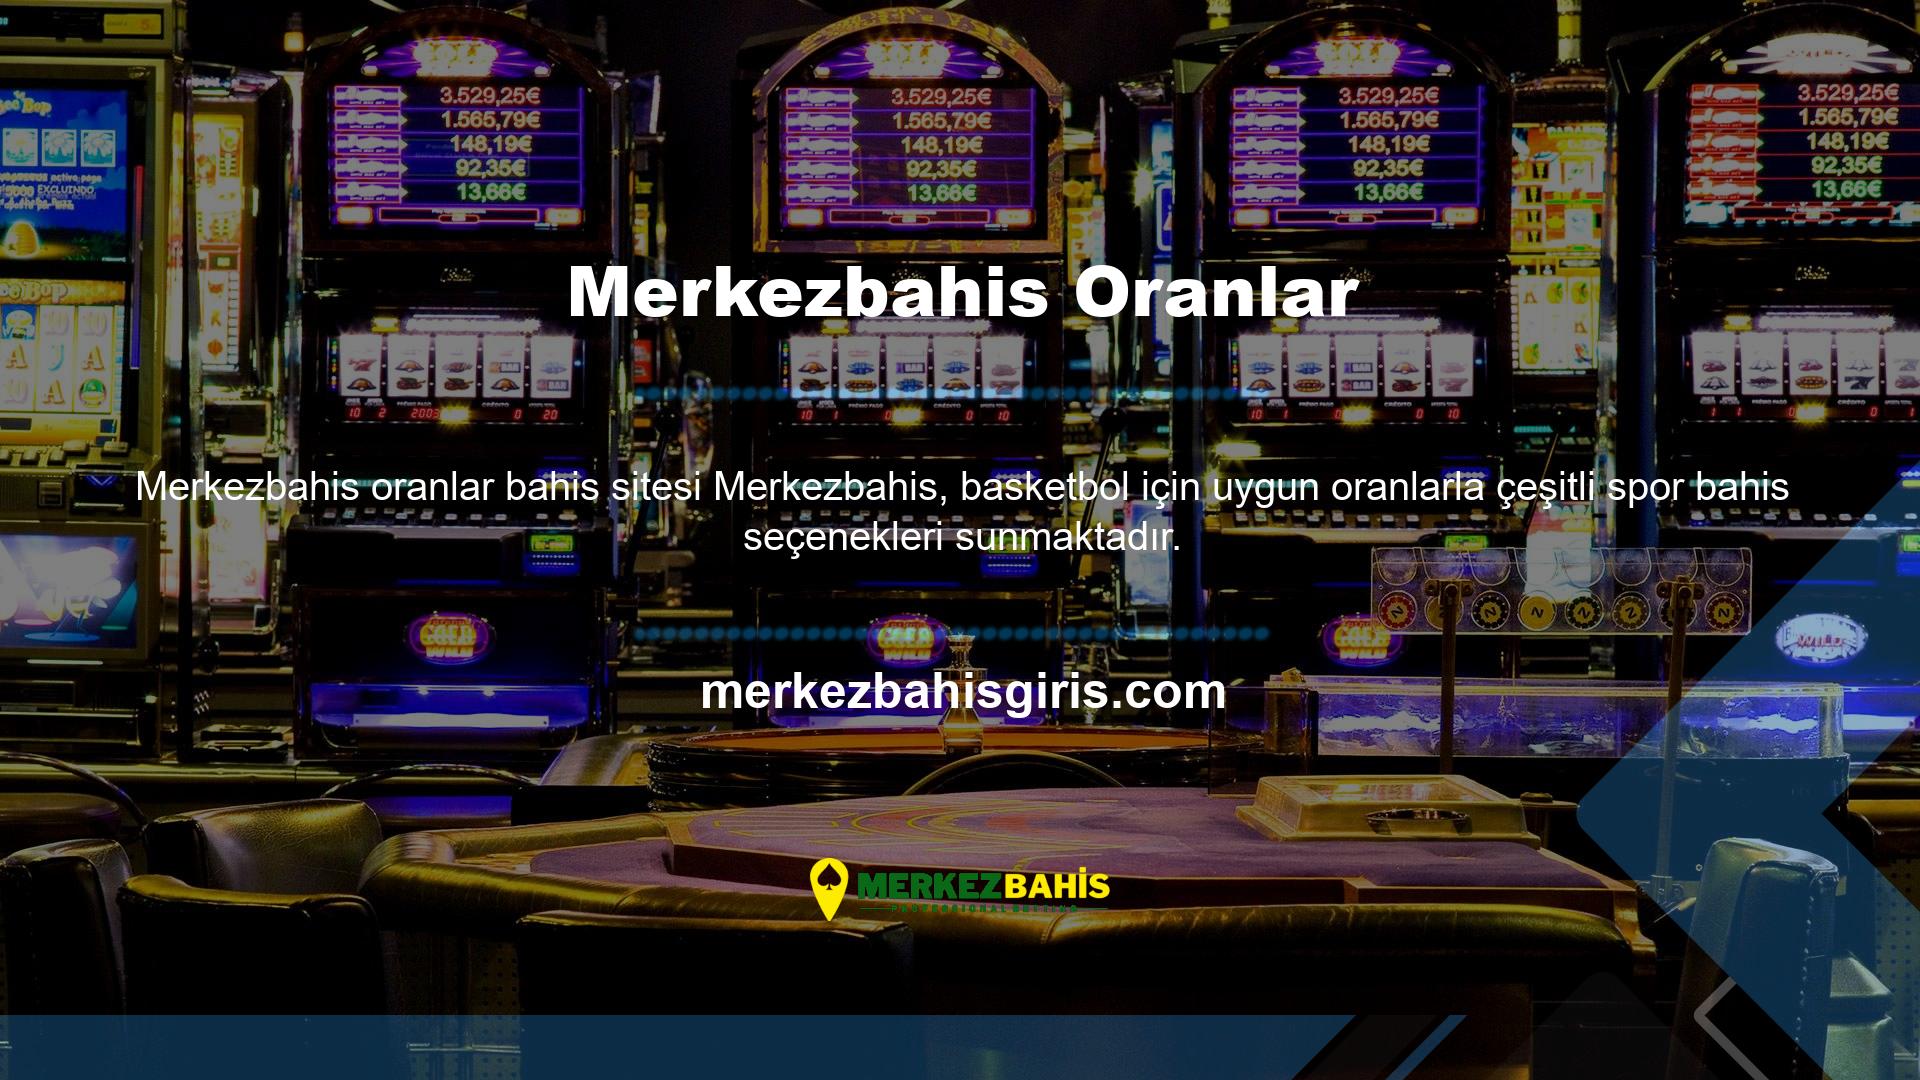 Çevrimiçi casino sitesi, kazançların yatırılması için Merkezbahis ödeme yapılmasını gerektirir